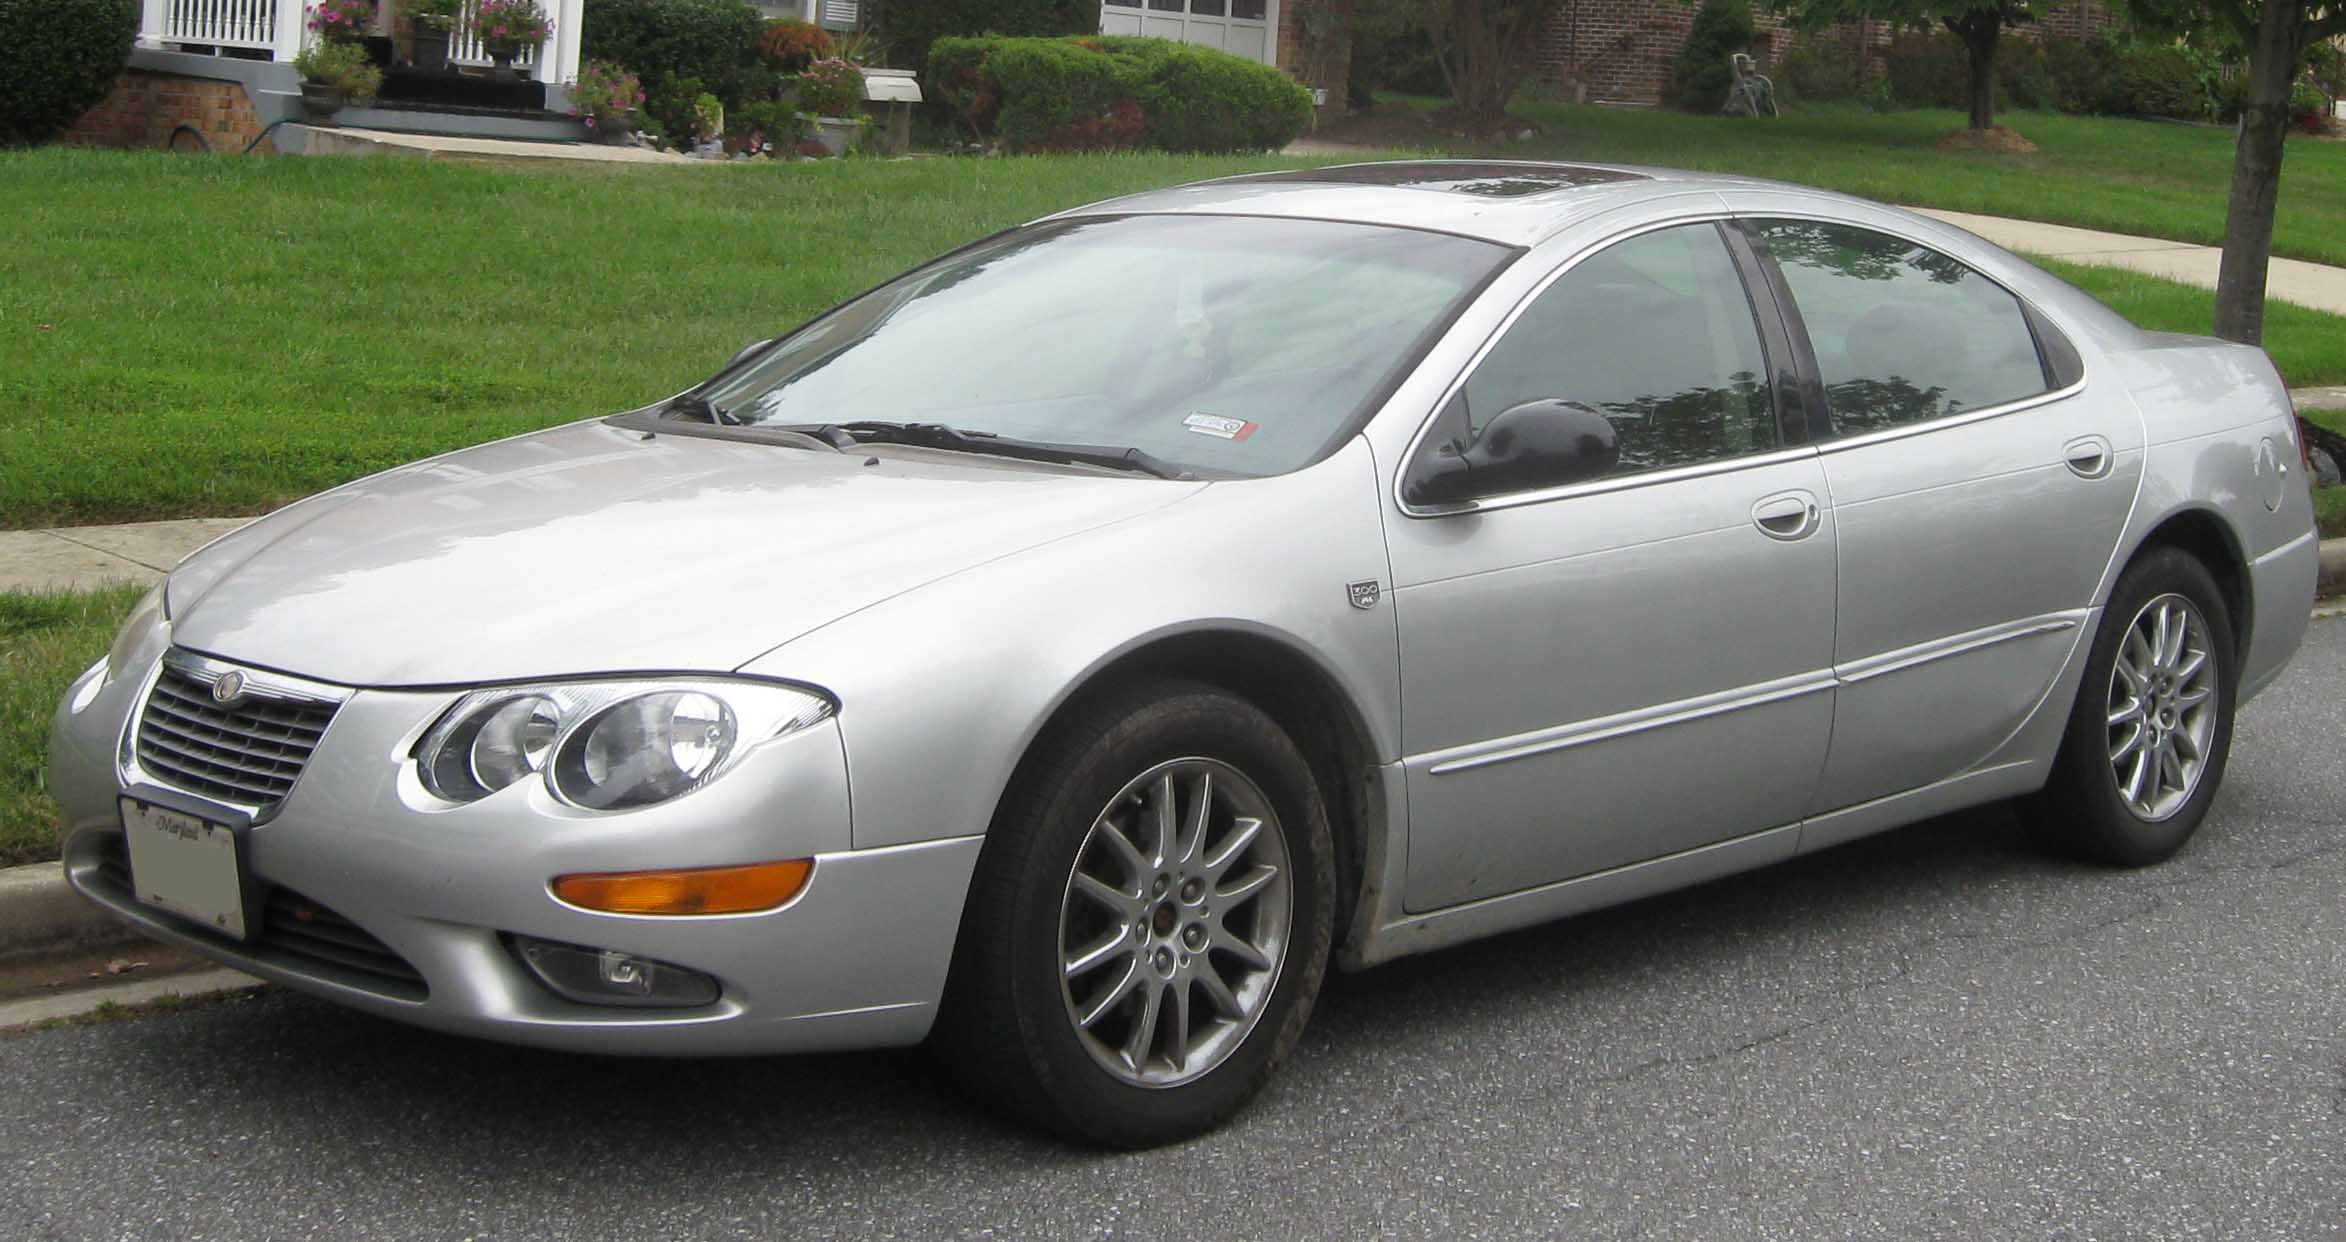 File:2002-2004 Chrysler 300M.jpg - Wikimedia Commons